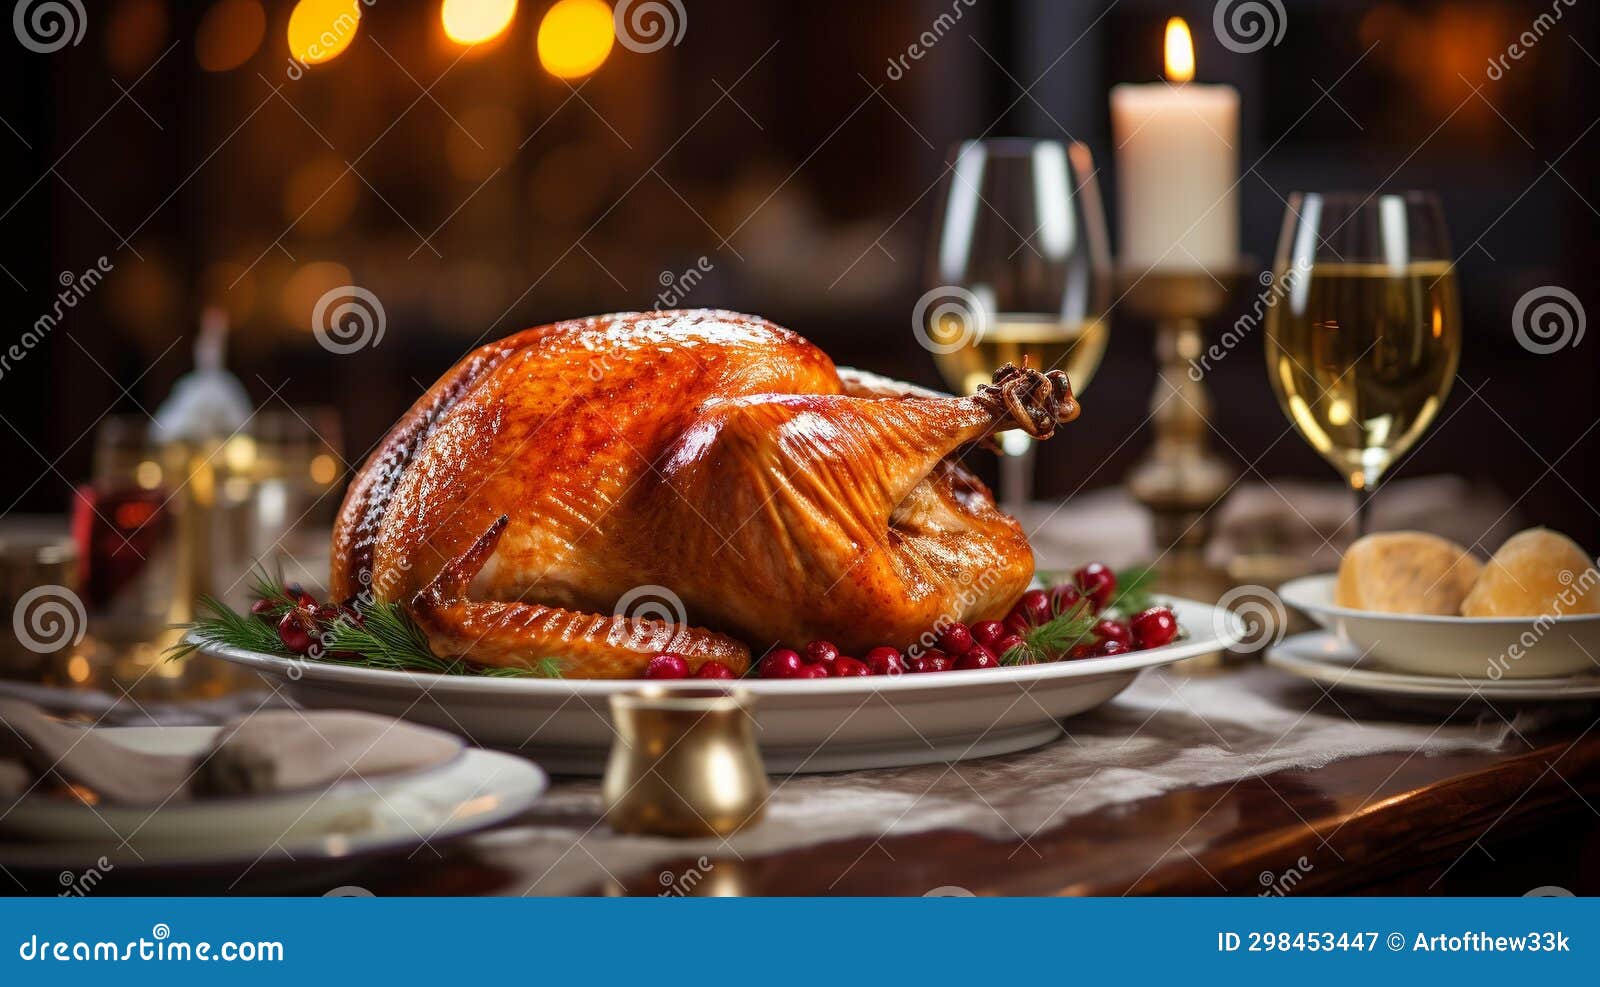 golden brown thanksgiving turkey on elegant dinner table